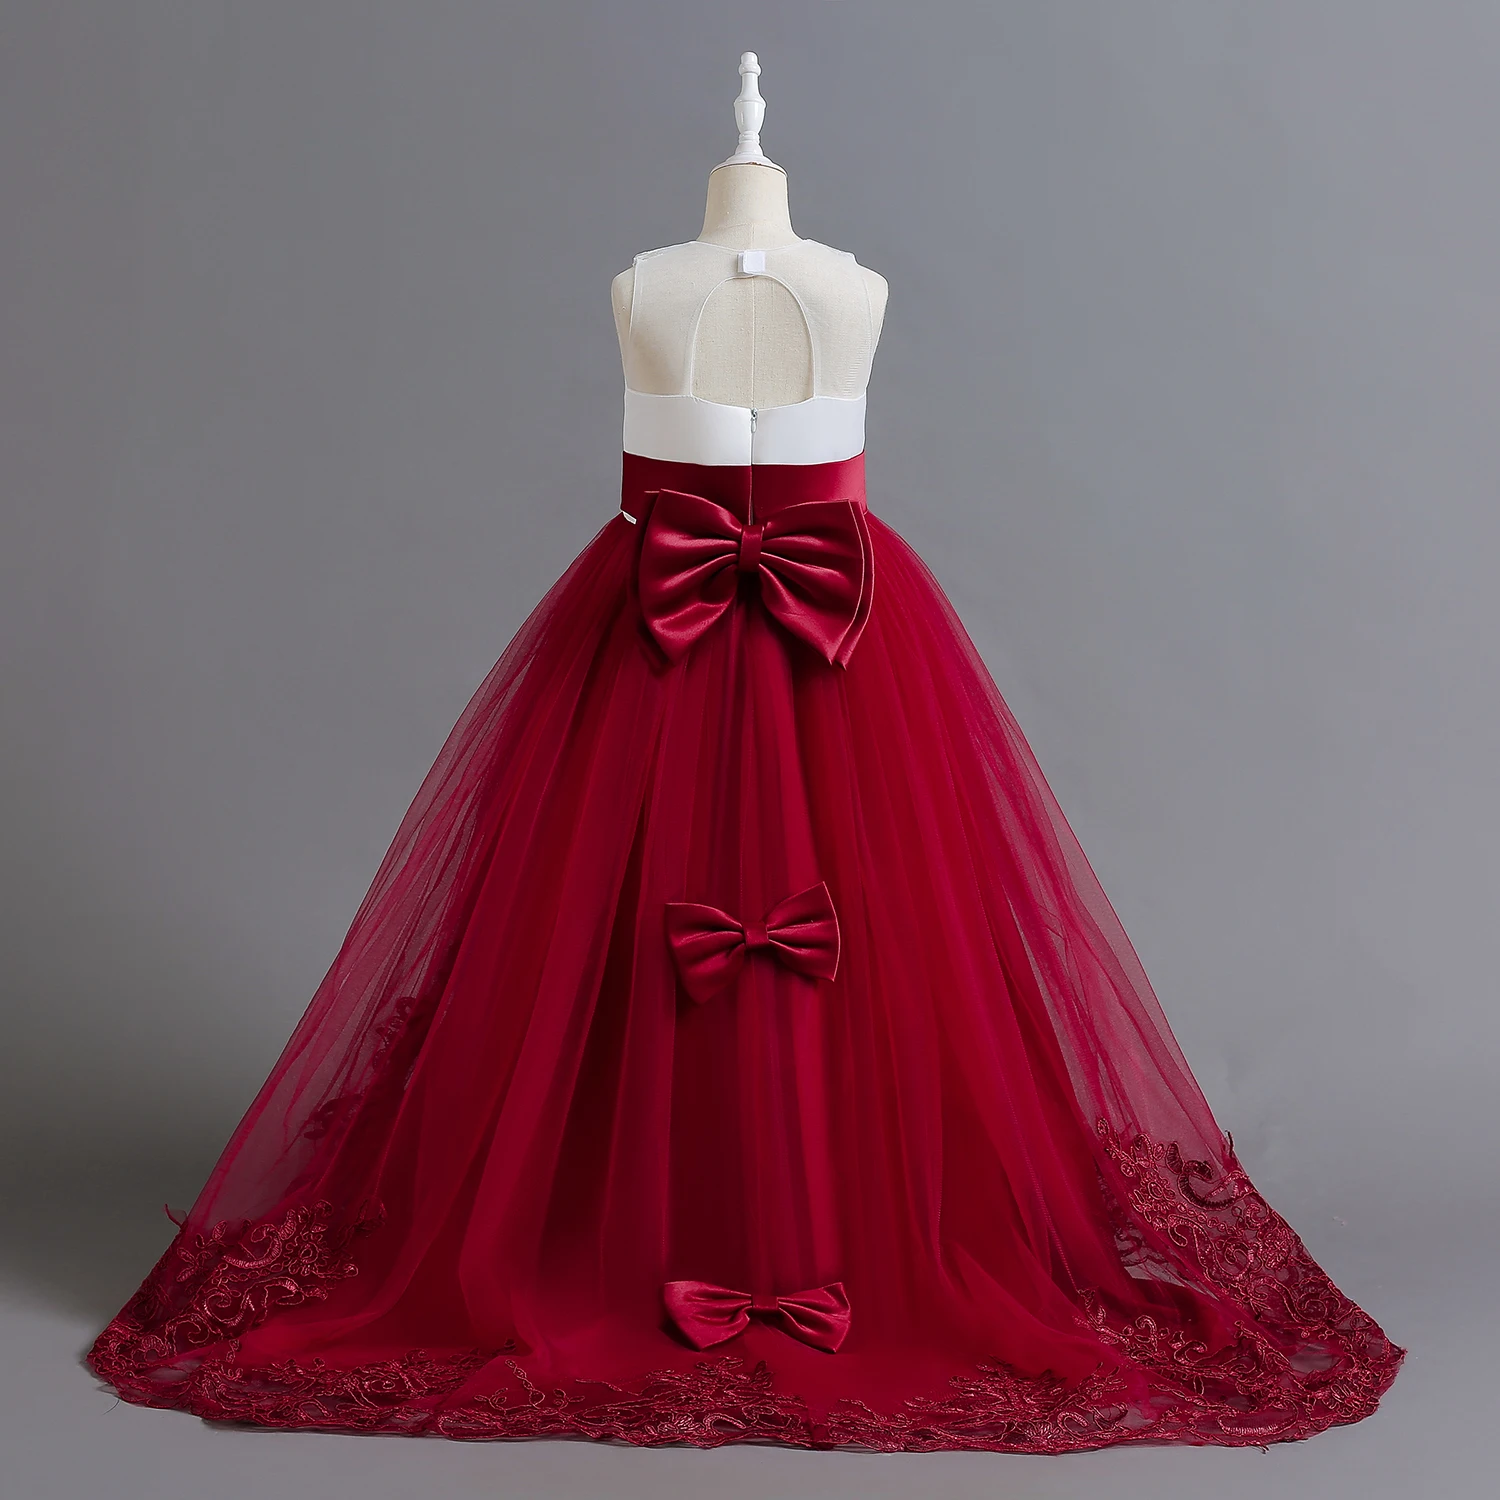 

Длинное платье для девочек-подростков, красное вечернее платье с юбкой годе, для свадьбы, торжества, детской церемонии